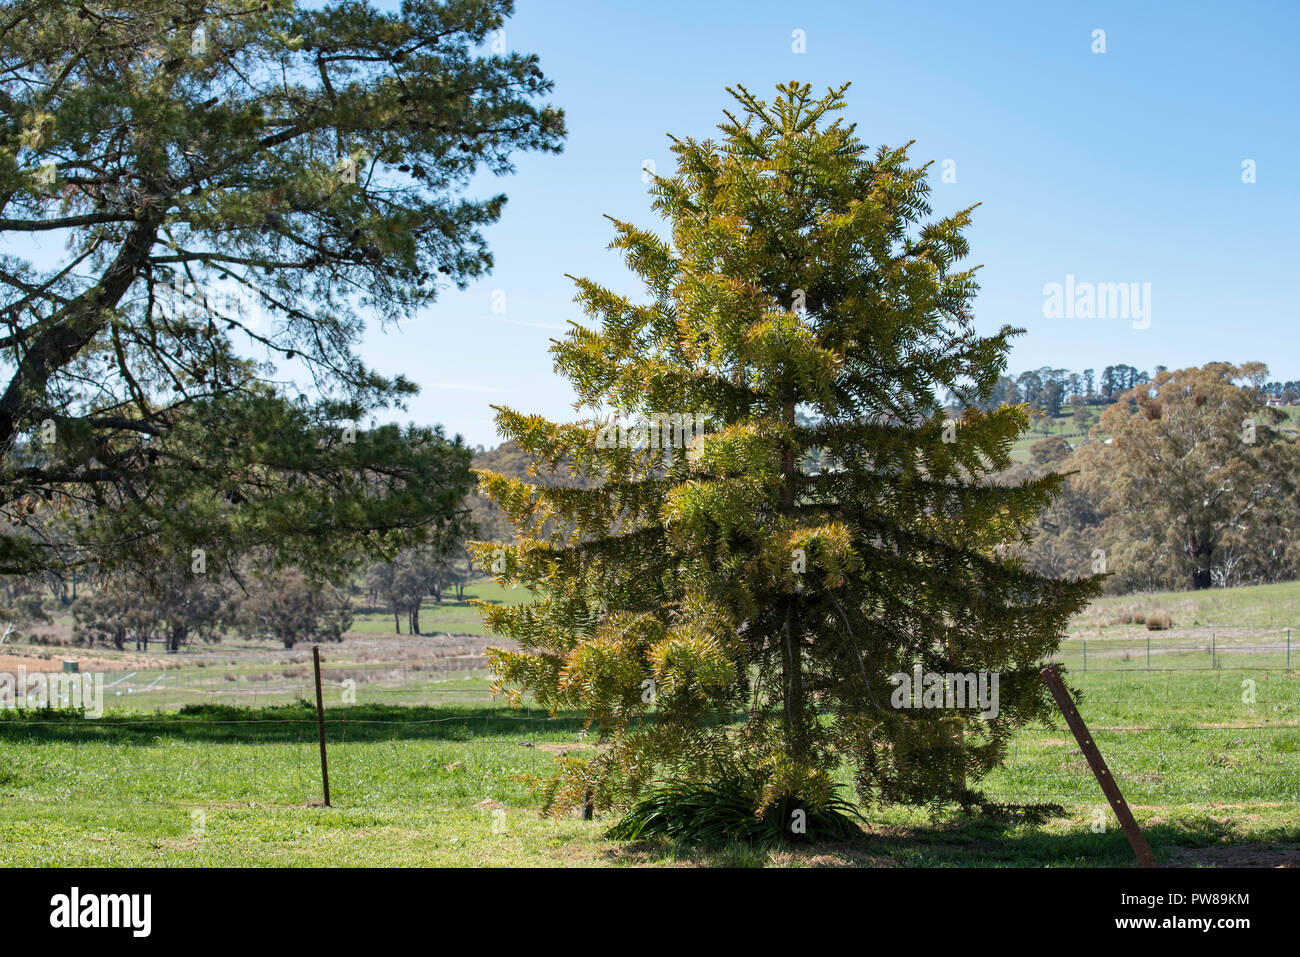 Grass Paddocks und eine junge bunya Kiefer (Araucaria bidwillii) Baum im Vordergrund auf einer Farm in der Nähe von Orange in New South Wales, Australien gepflanzt Stockfoto